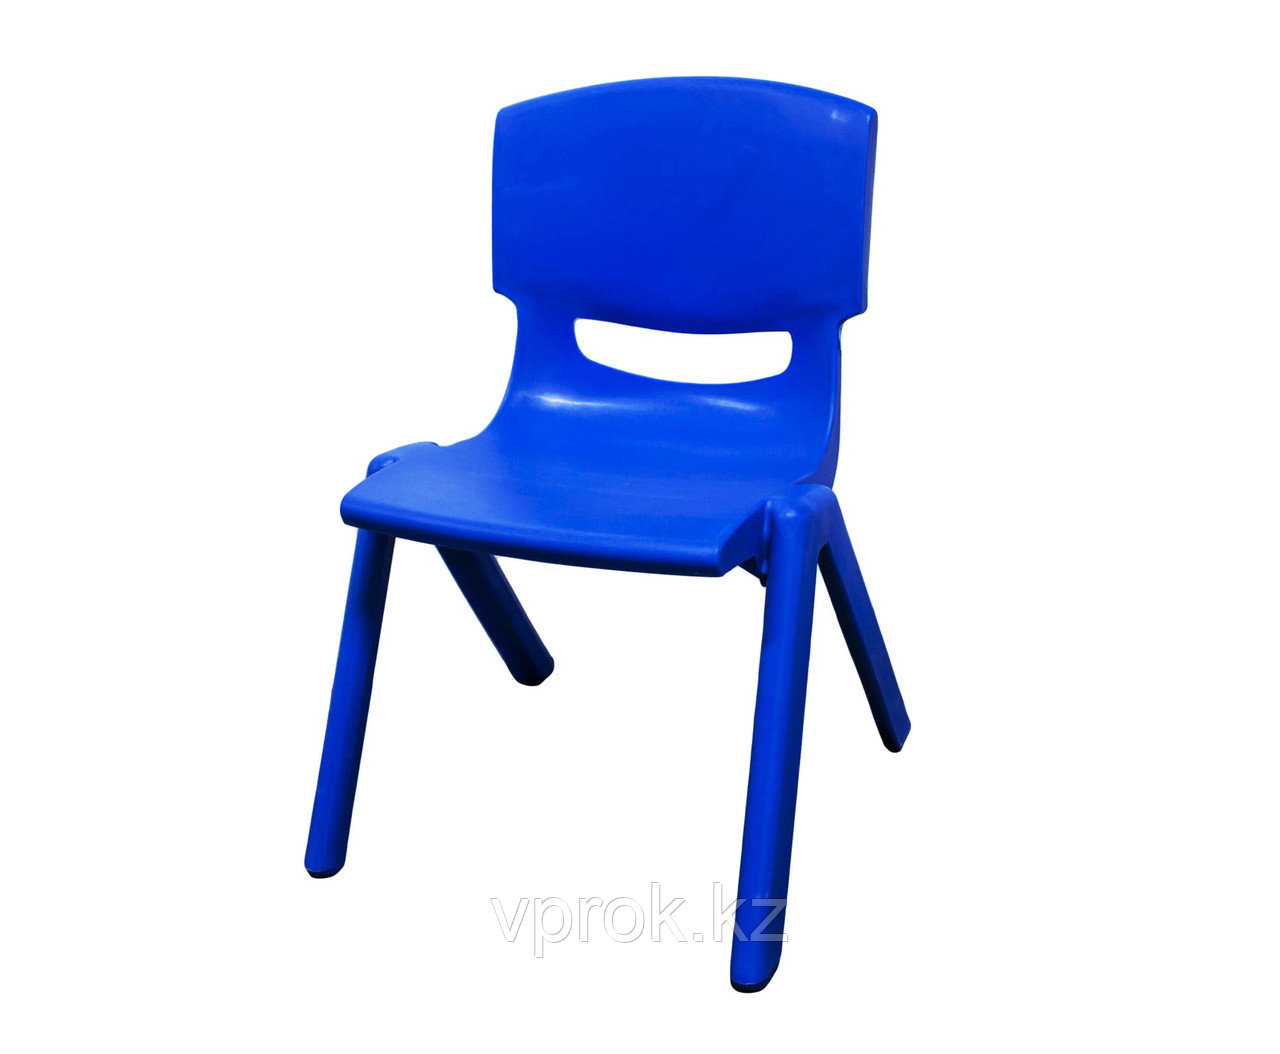 Стульчик детский пластиковый высота сиденья 24 см, синий